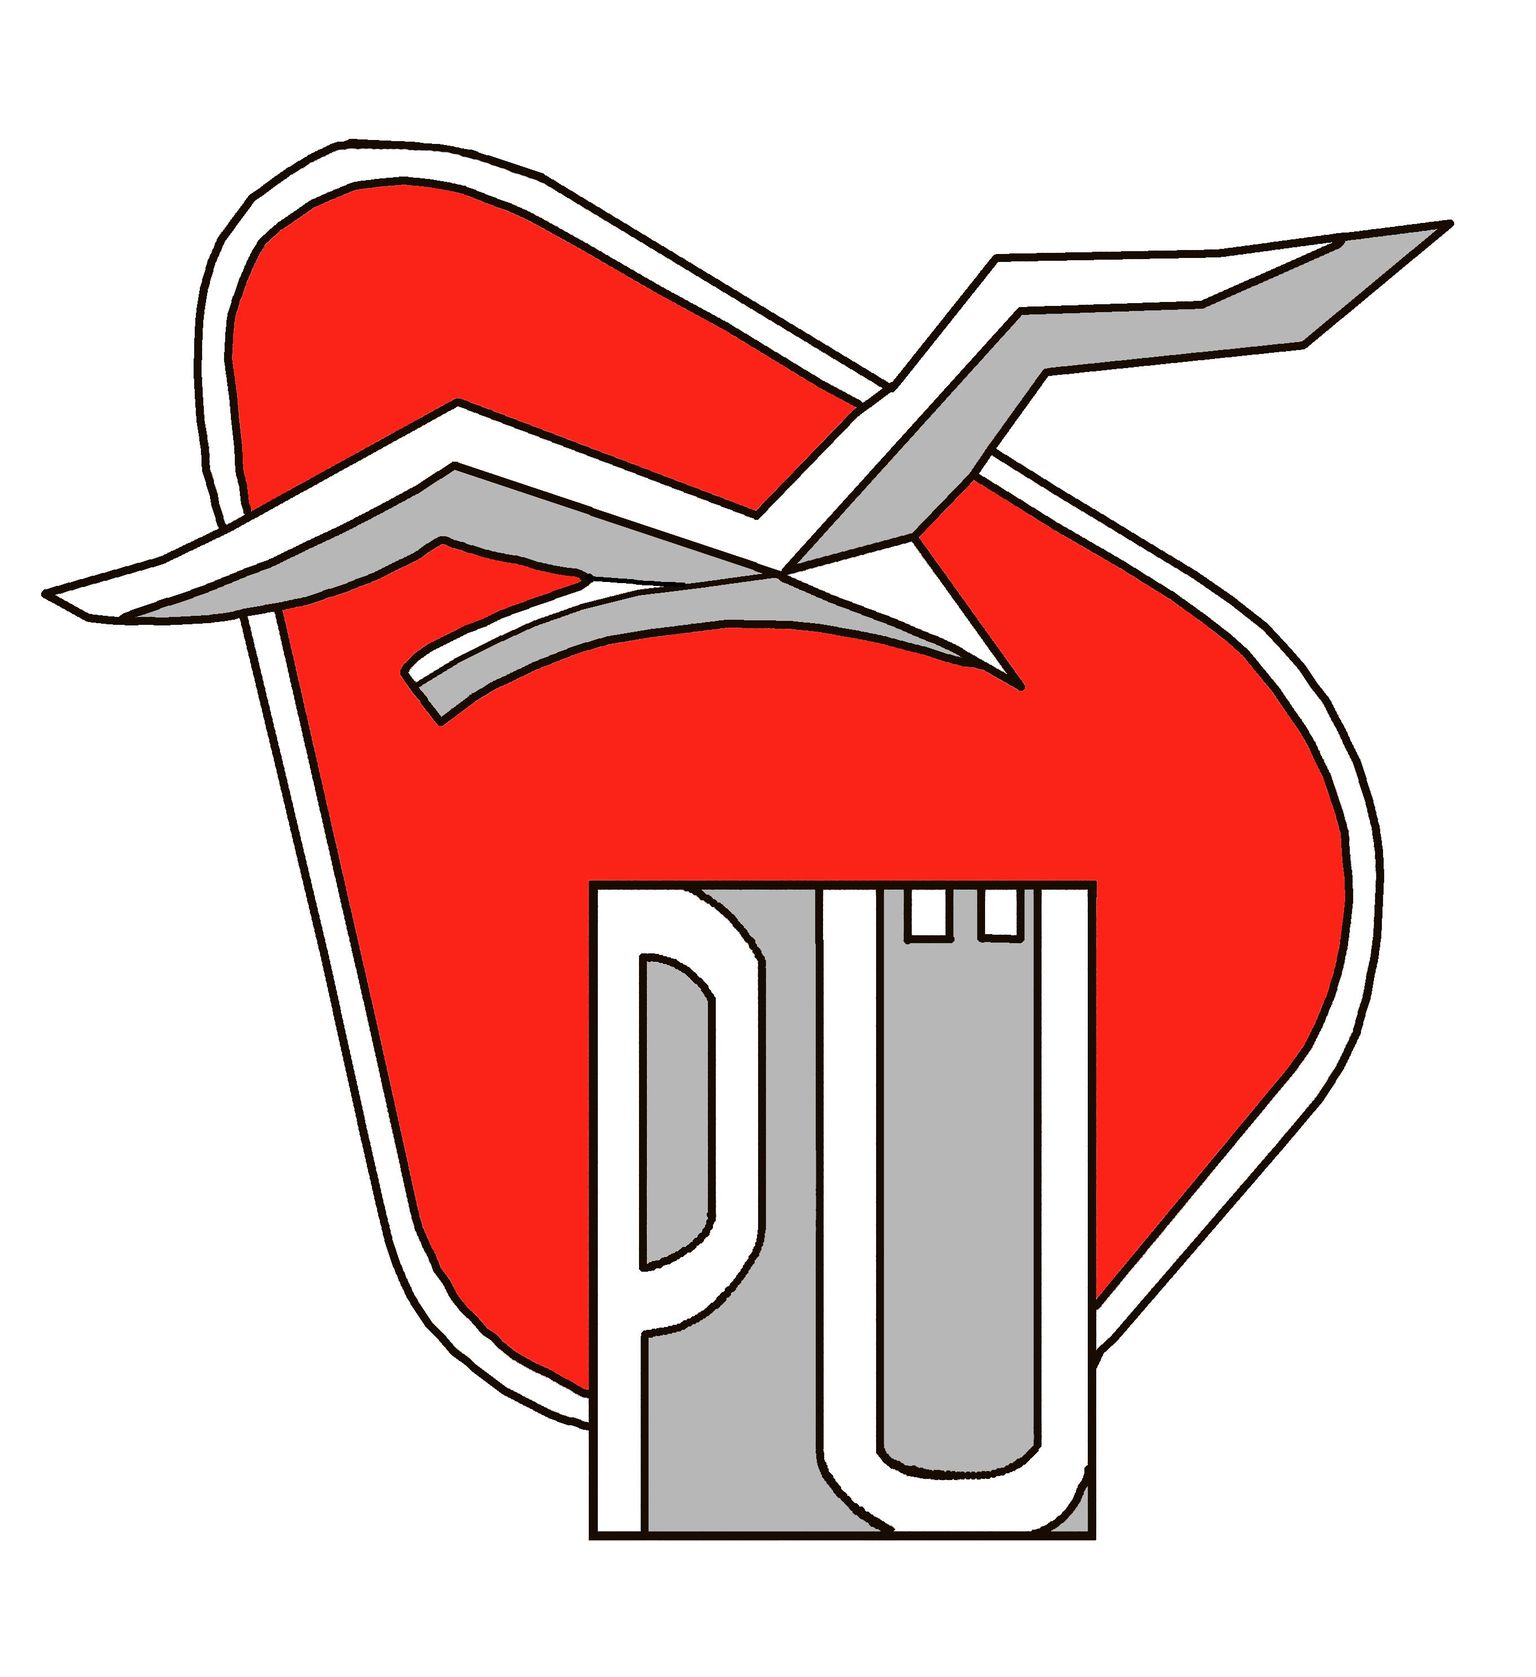 Pärnu ühisgümnaasiumi logo.